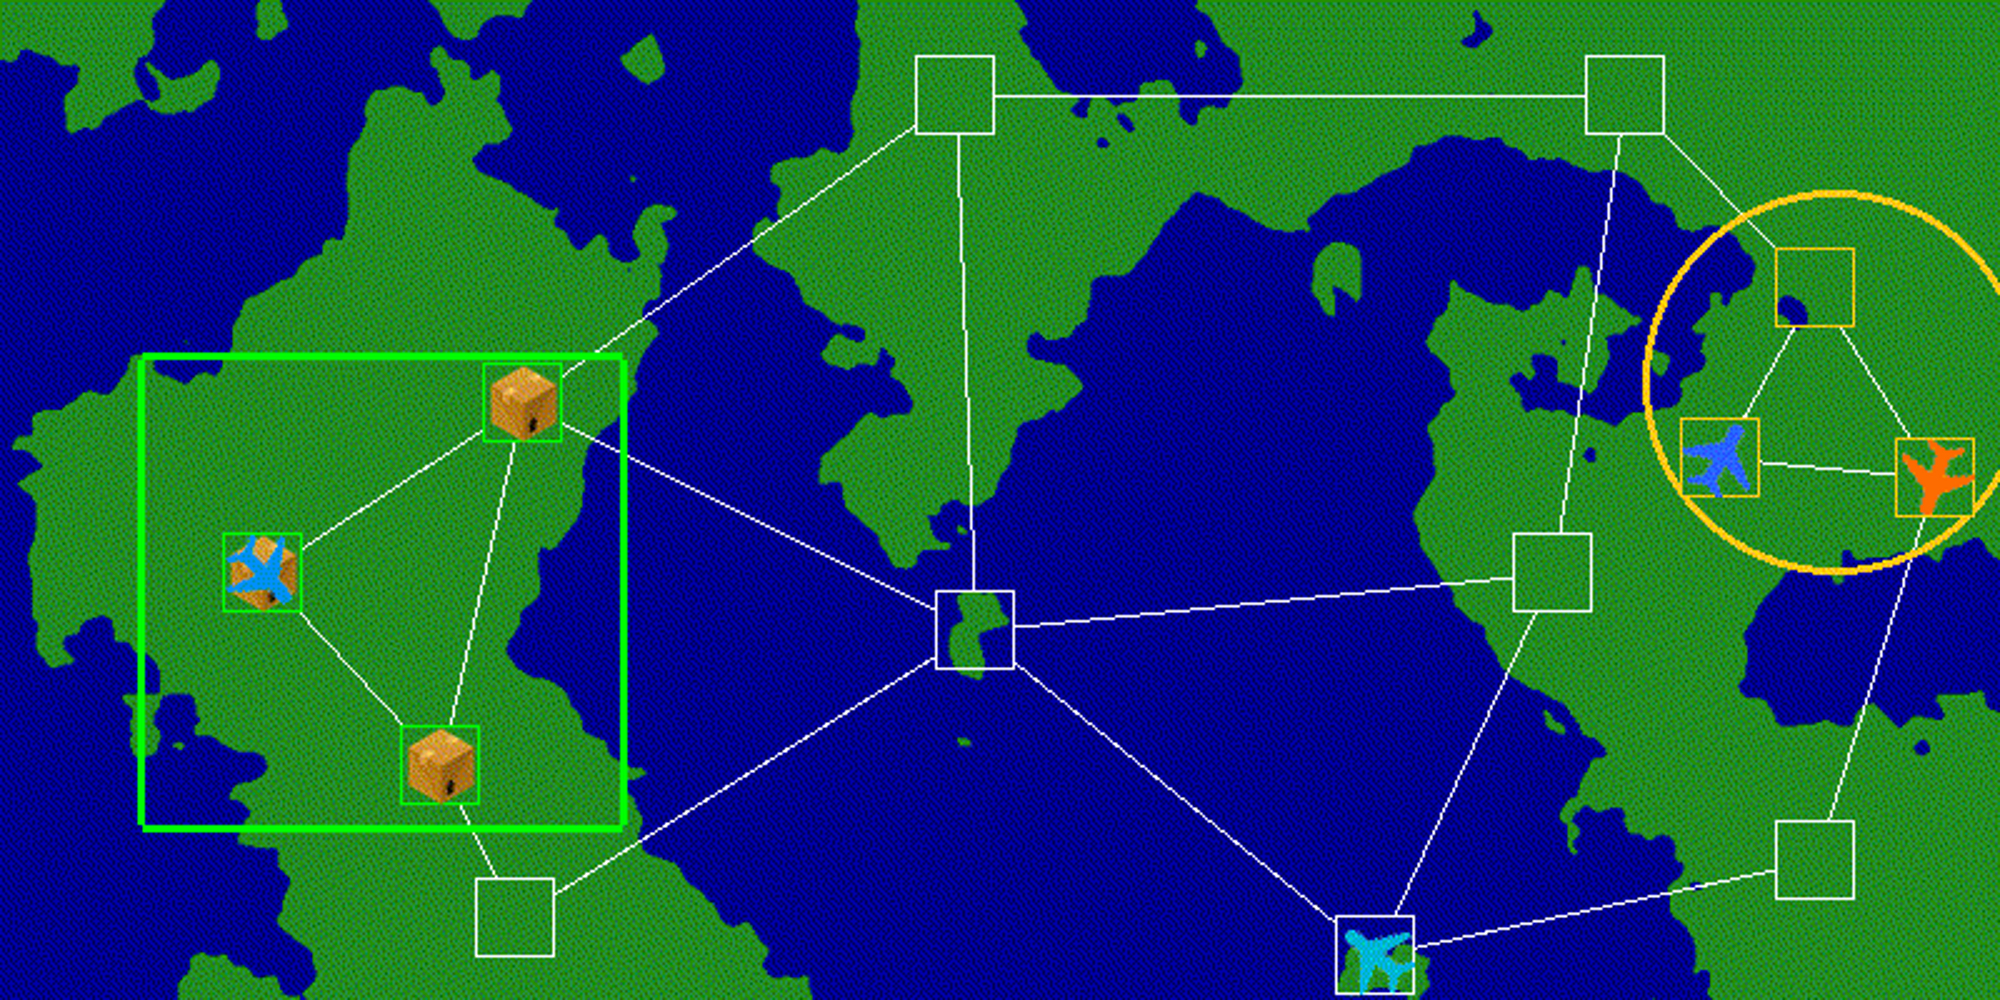 Airlift route scenario